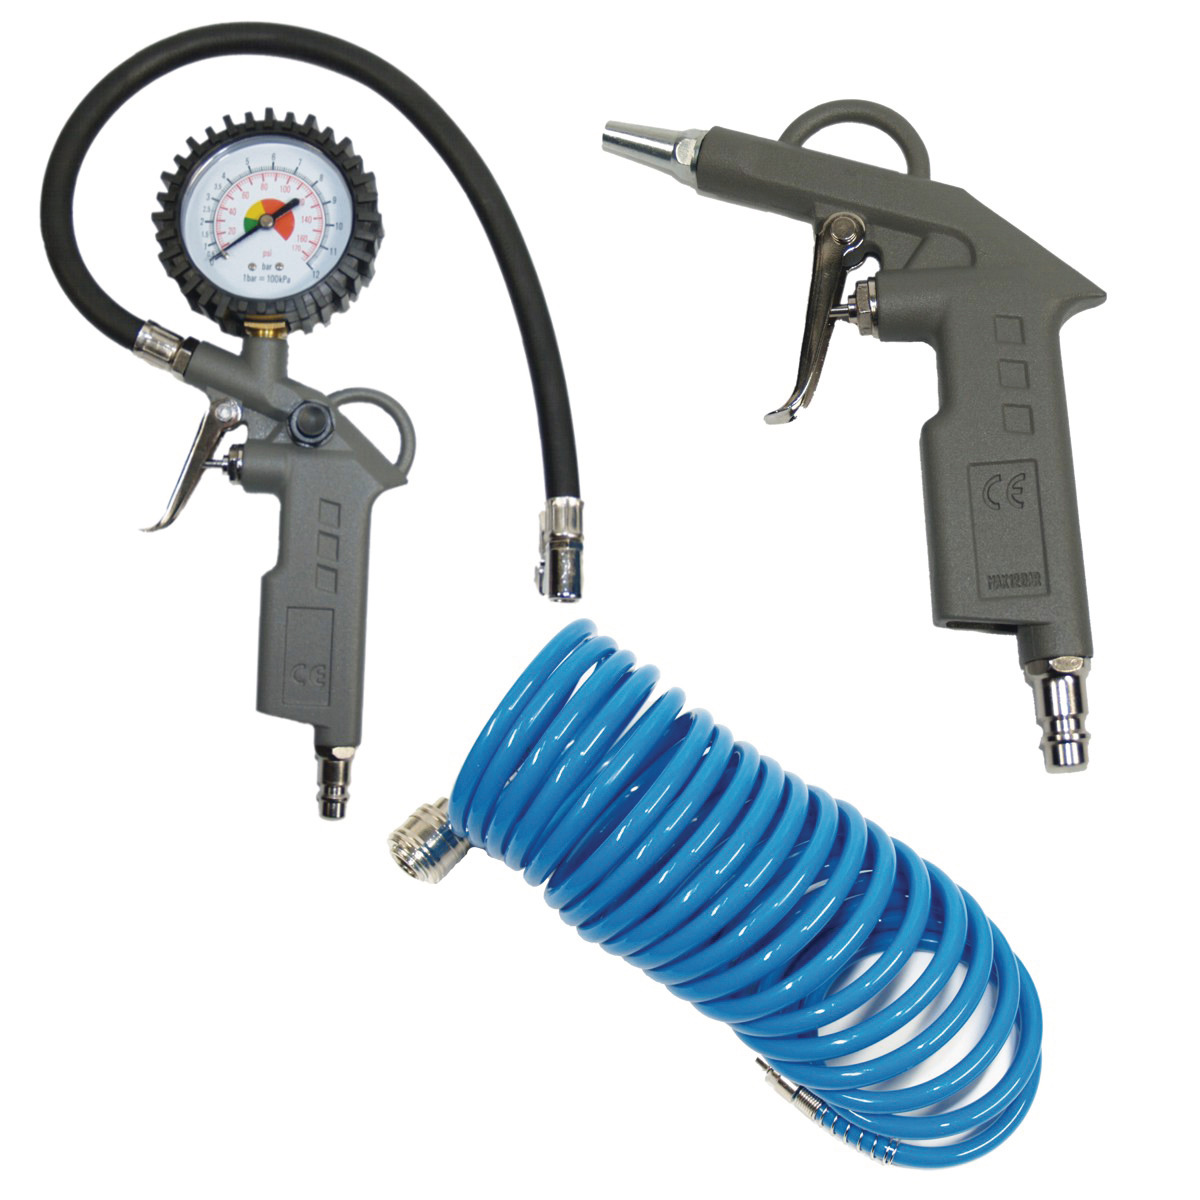 Druckluftset 3 teilig mit Ausblaspistole, Reifenfüller und Spiralschlauch